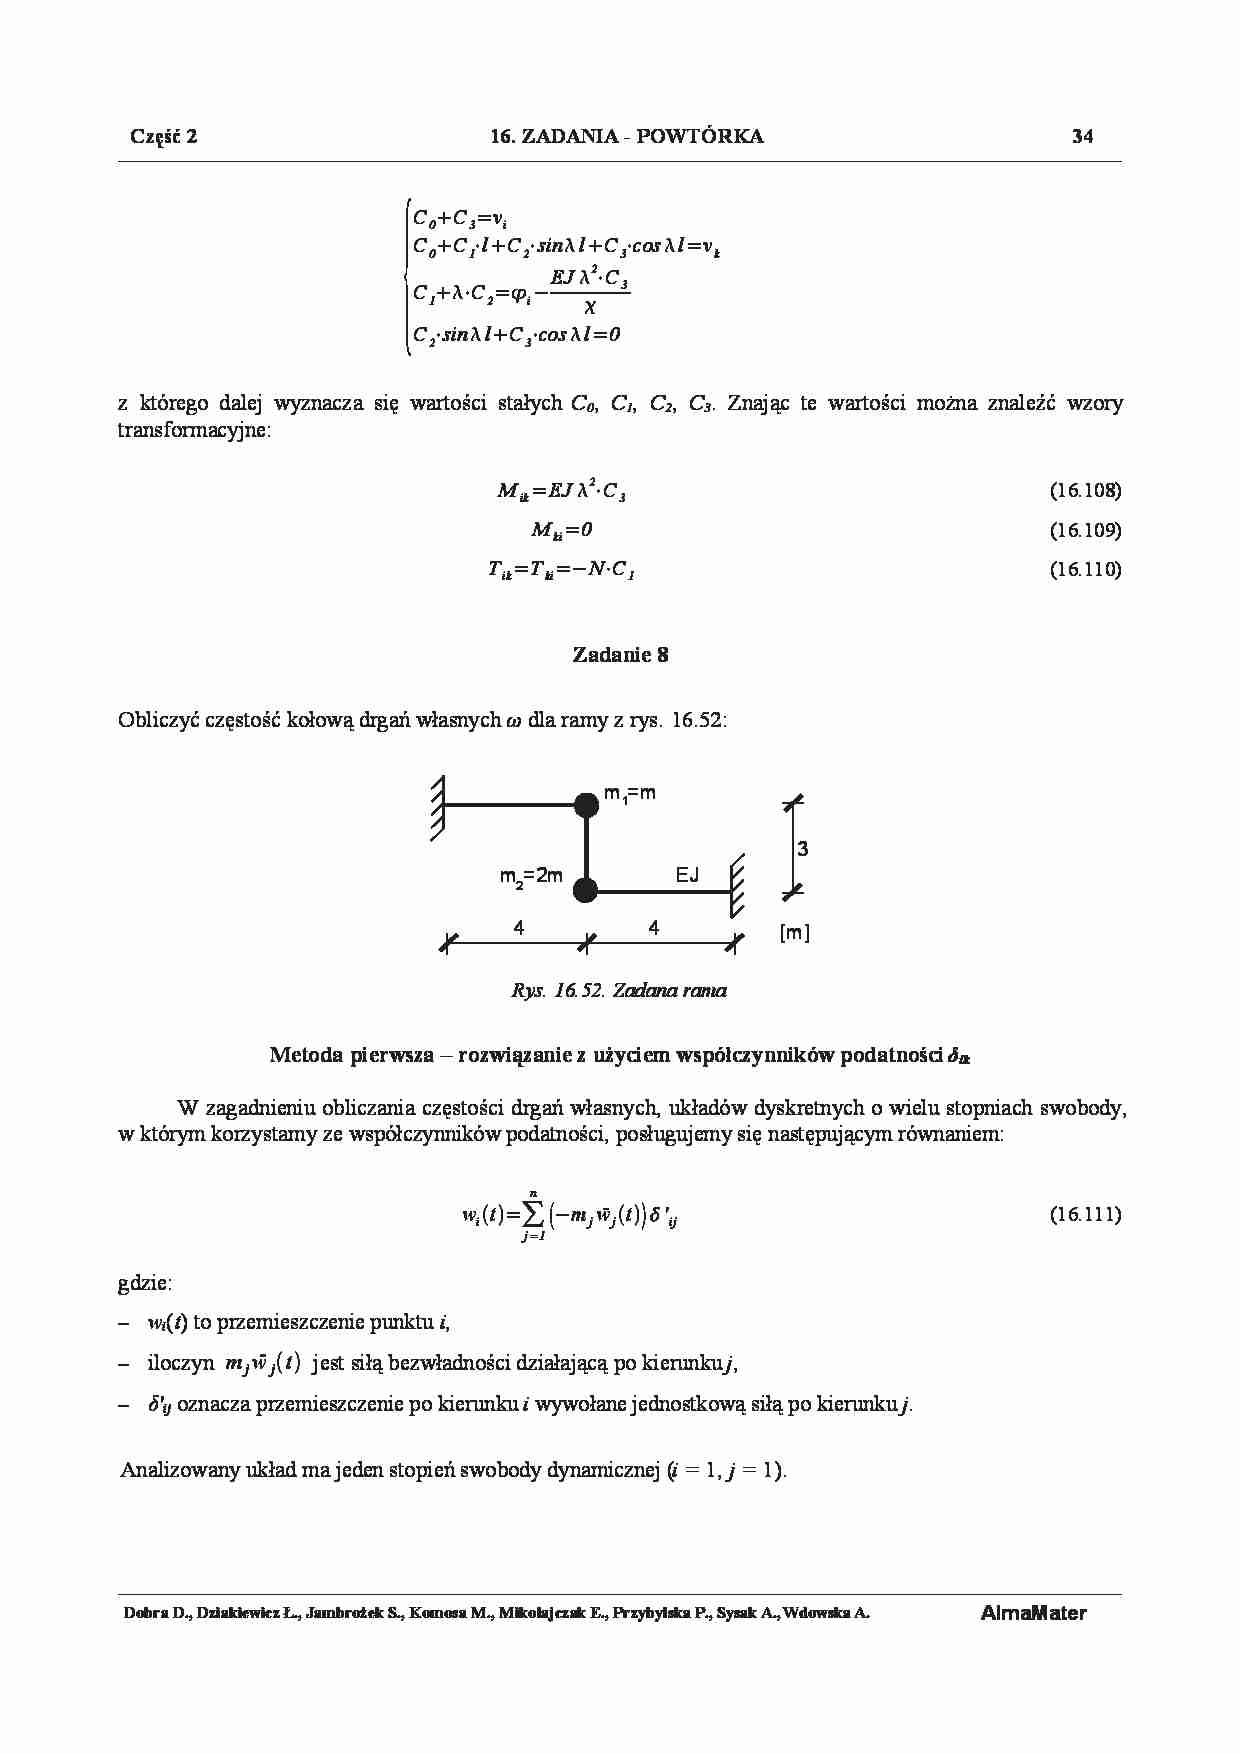 Mechanika konstrukcji - zadania 8 - strona 1